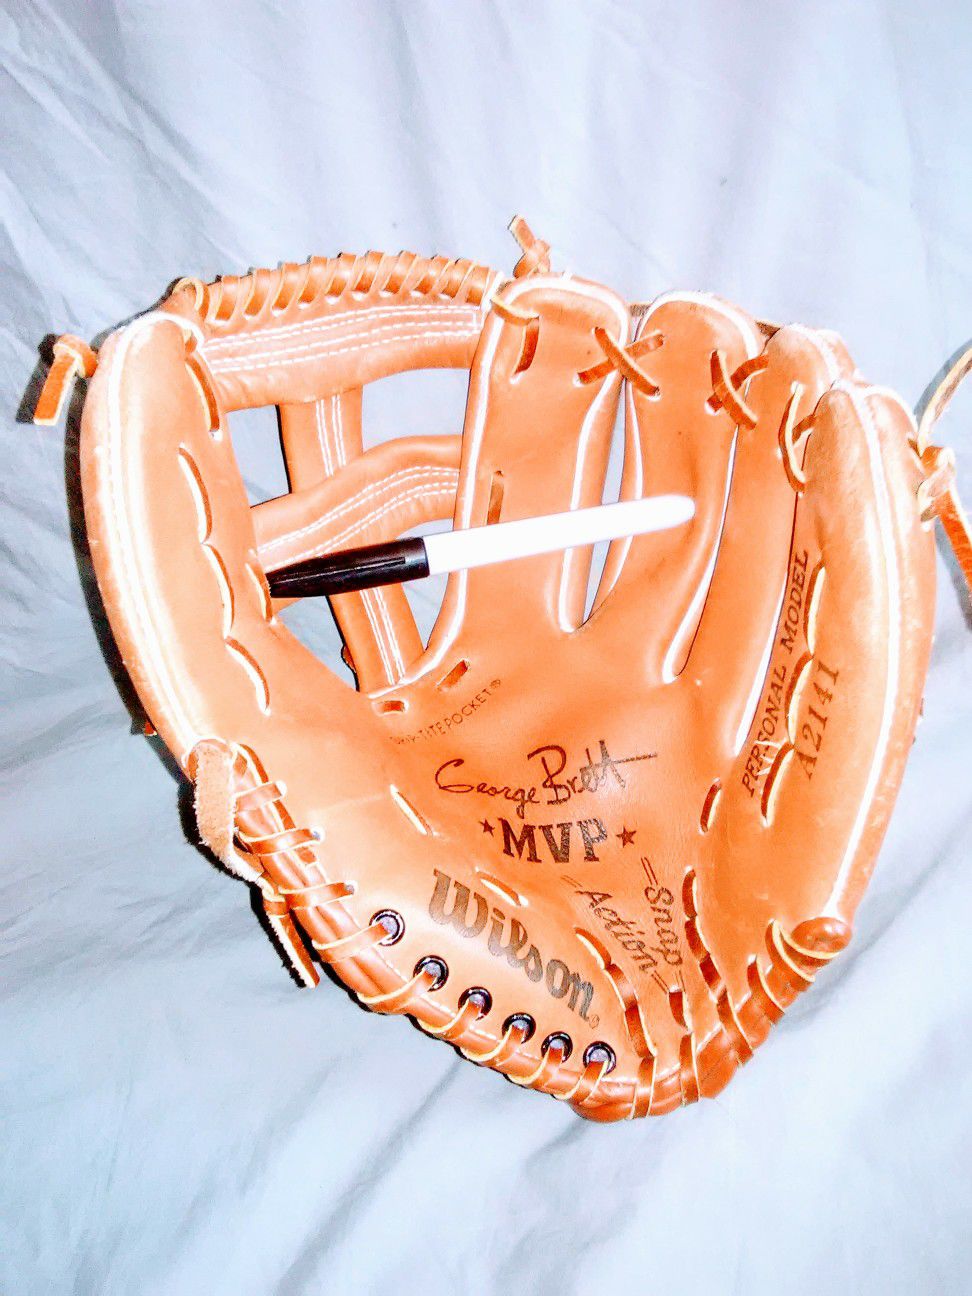 Wilson infielder's baseball glove